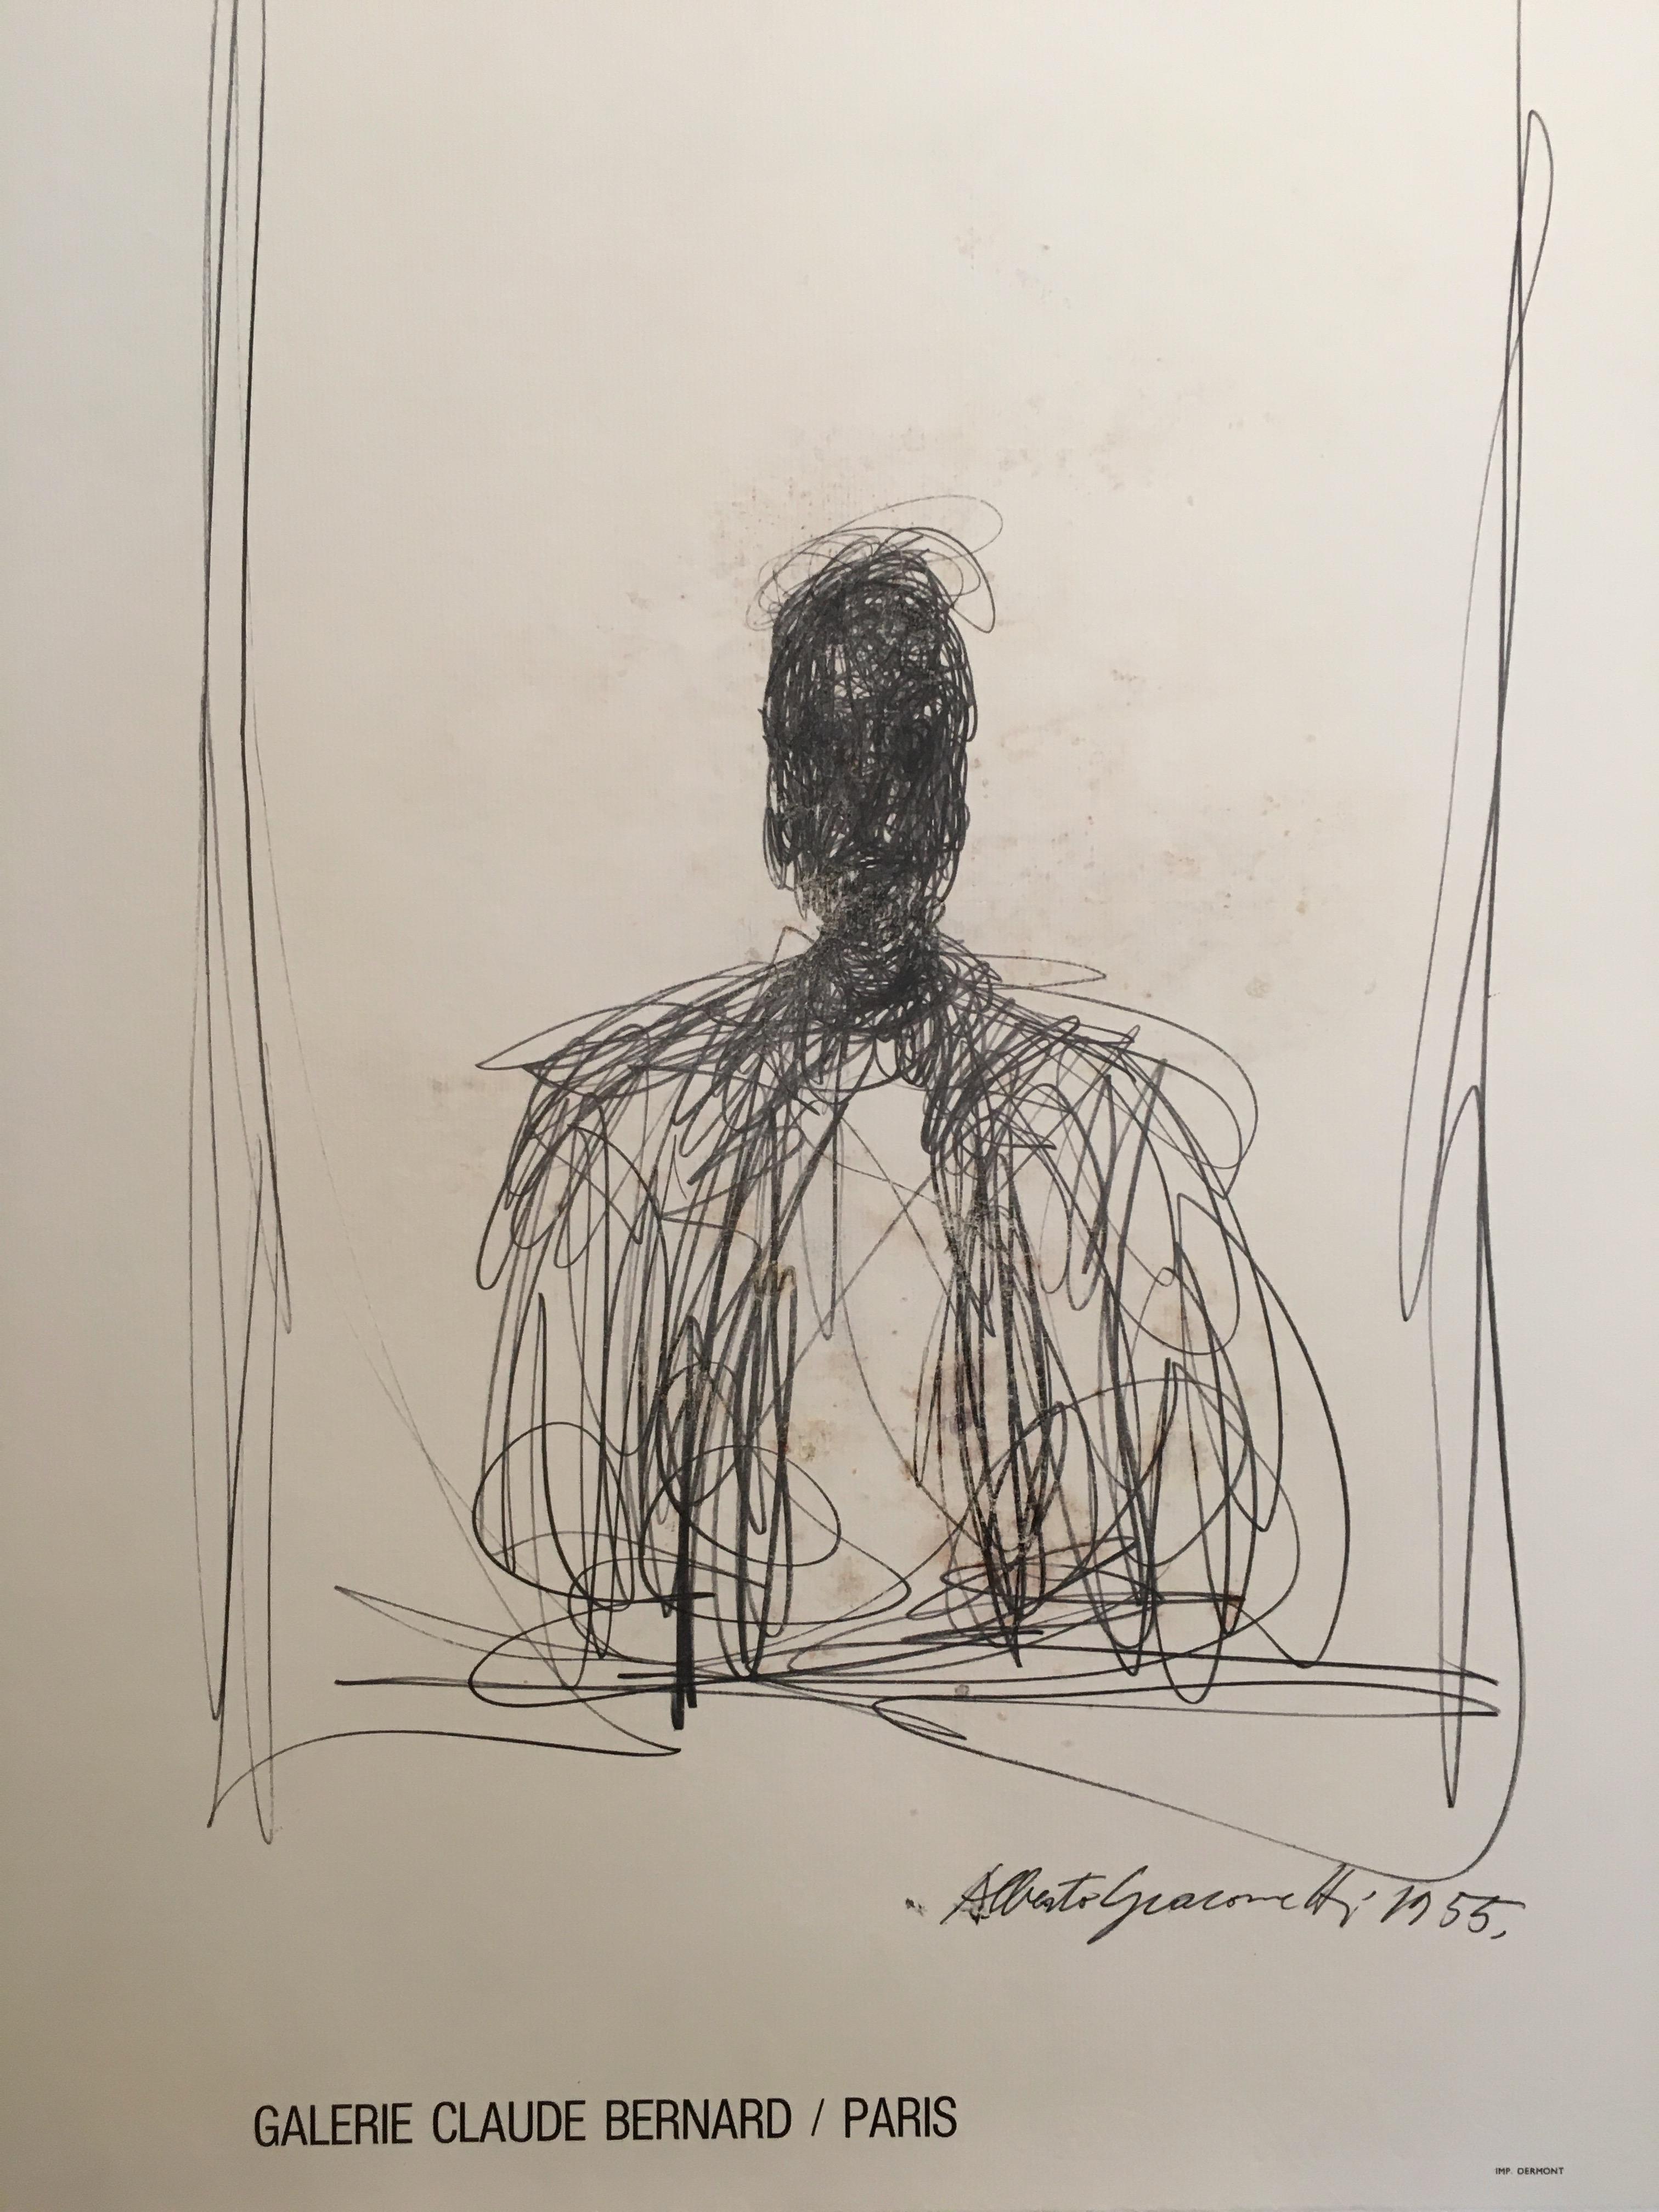 Galère originale d'Alberto Giacometti et affiche d'exposition:: Galerie Claude Bernard

Alberto Giacometti est surtout connu pour ses représentations allongées et flétries de la forme humaine:: notamment sa sculpture de 1960:: l'homme qui marche.